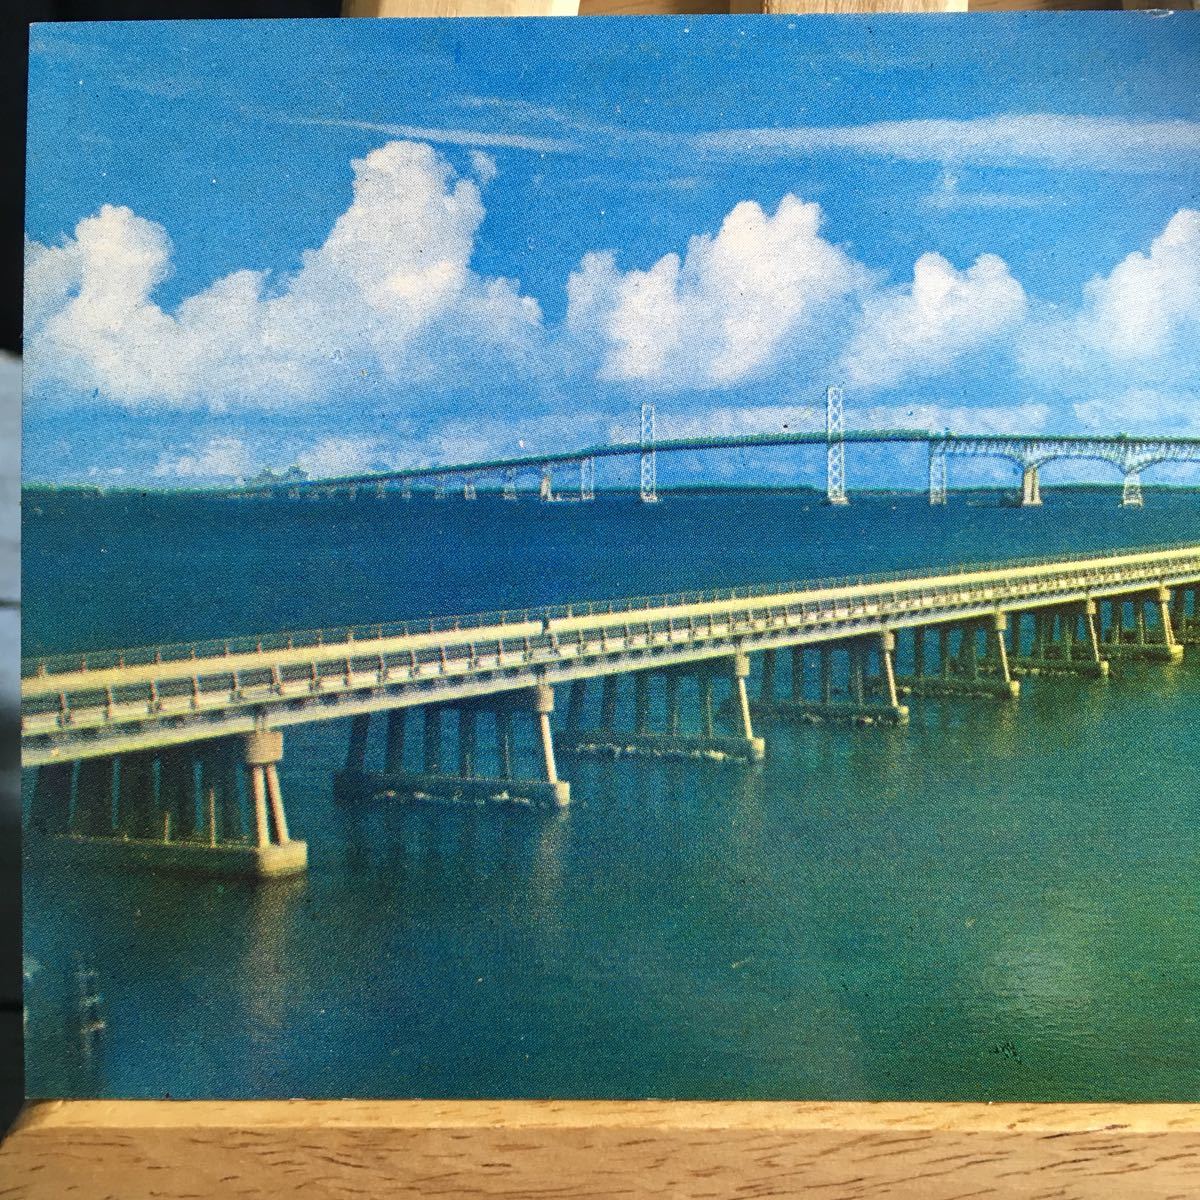 絵葉書 絵はがき 古い絵葉書 古ハガキ ポストカード チェサピーク湾の橋メリーランド州の東海岸と西海岸を結ぶ1952年に45,000ドル…(1557)_画像2